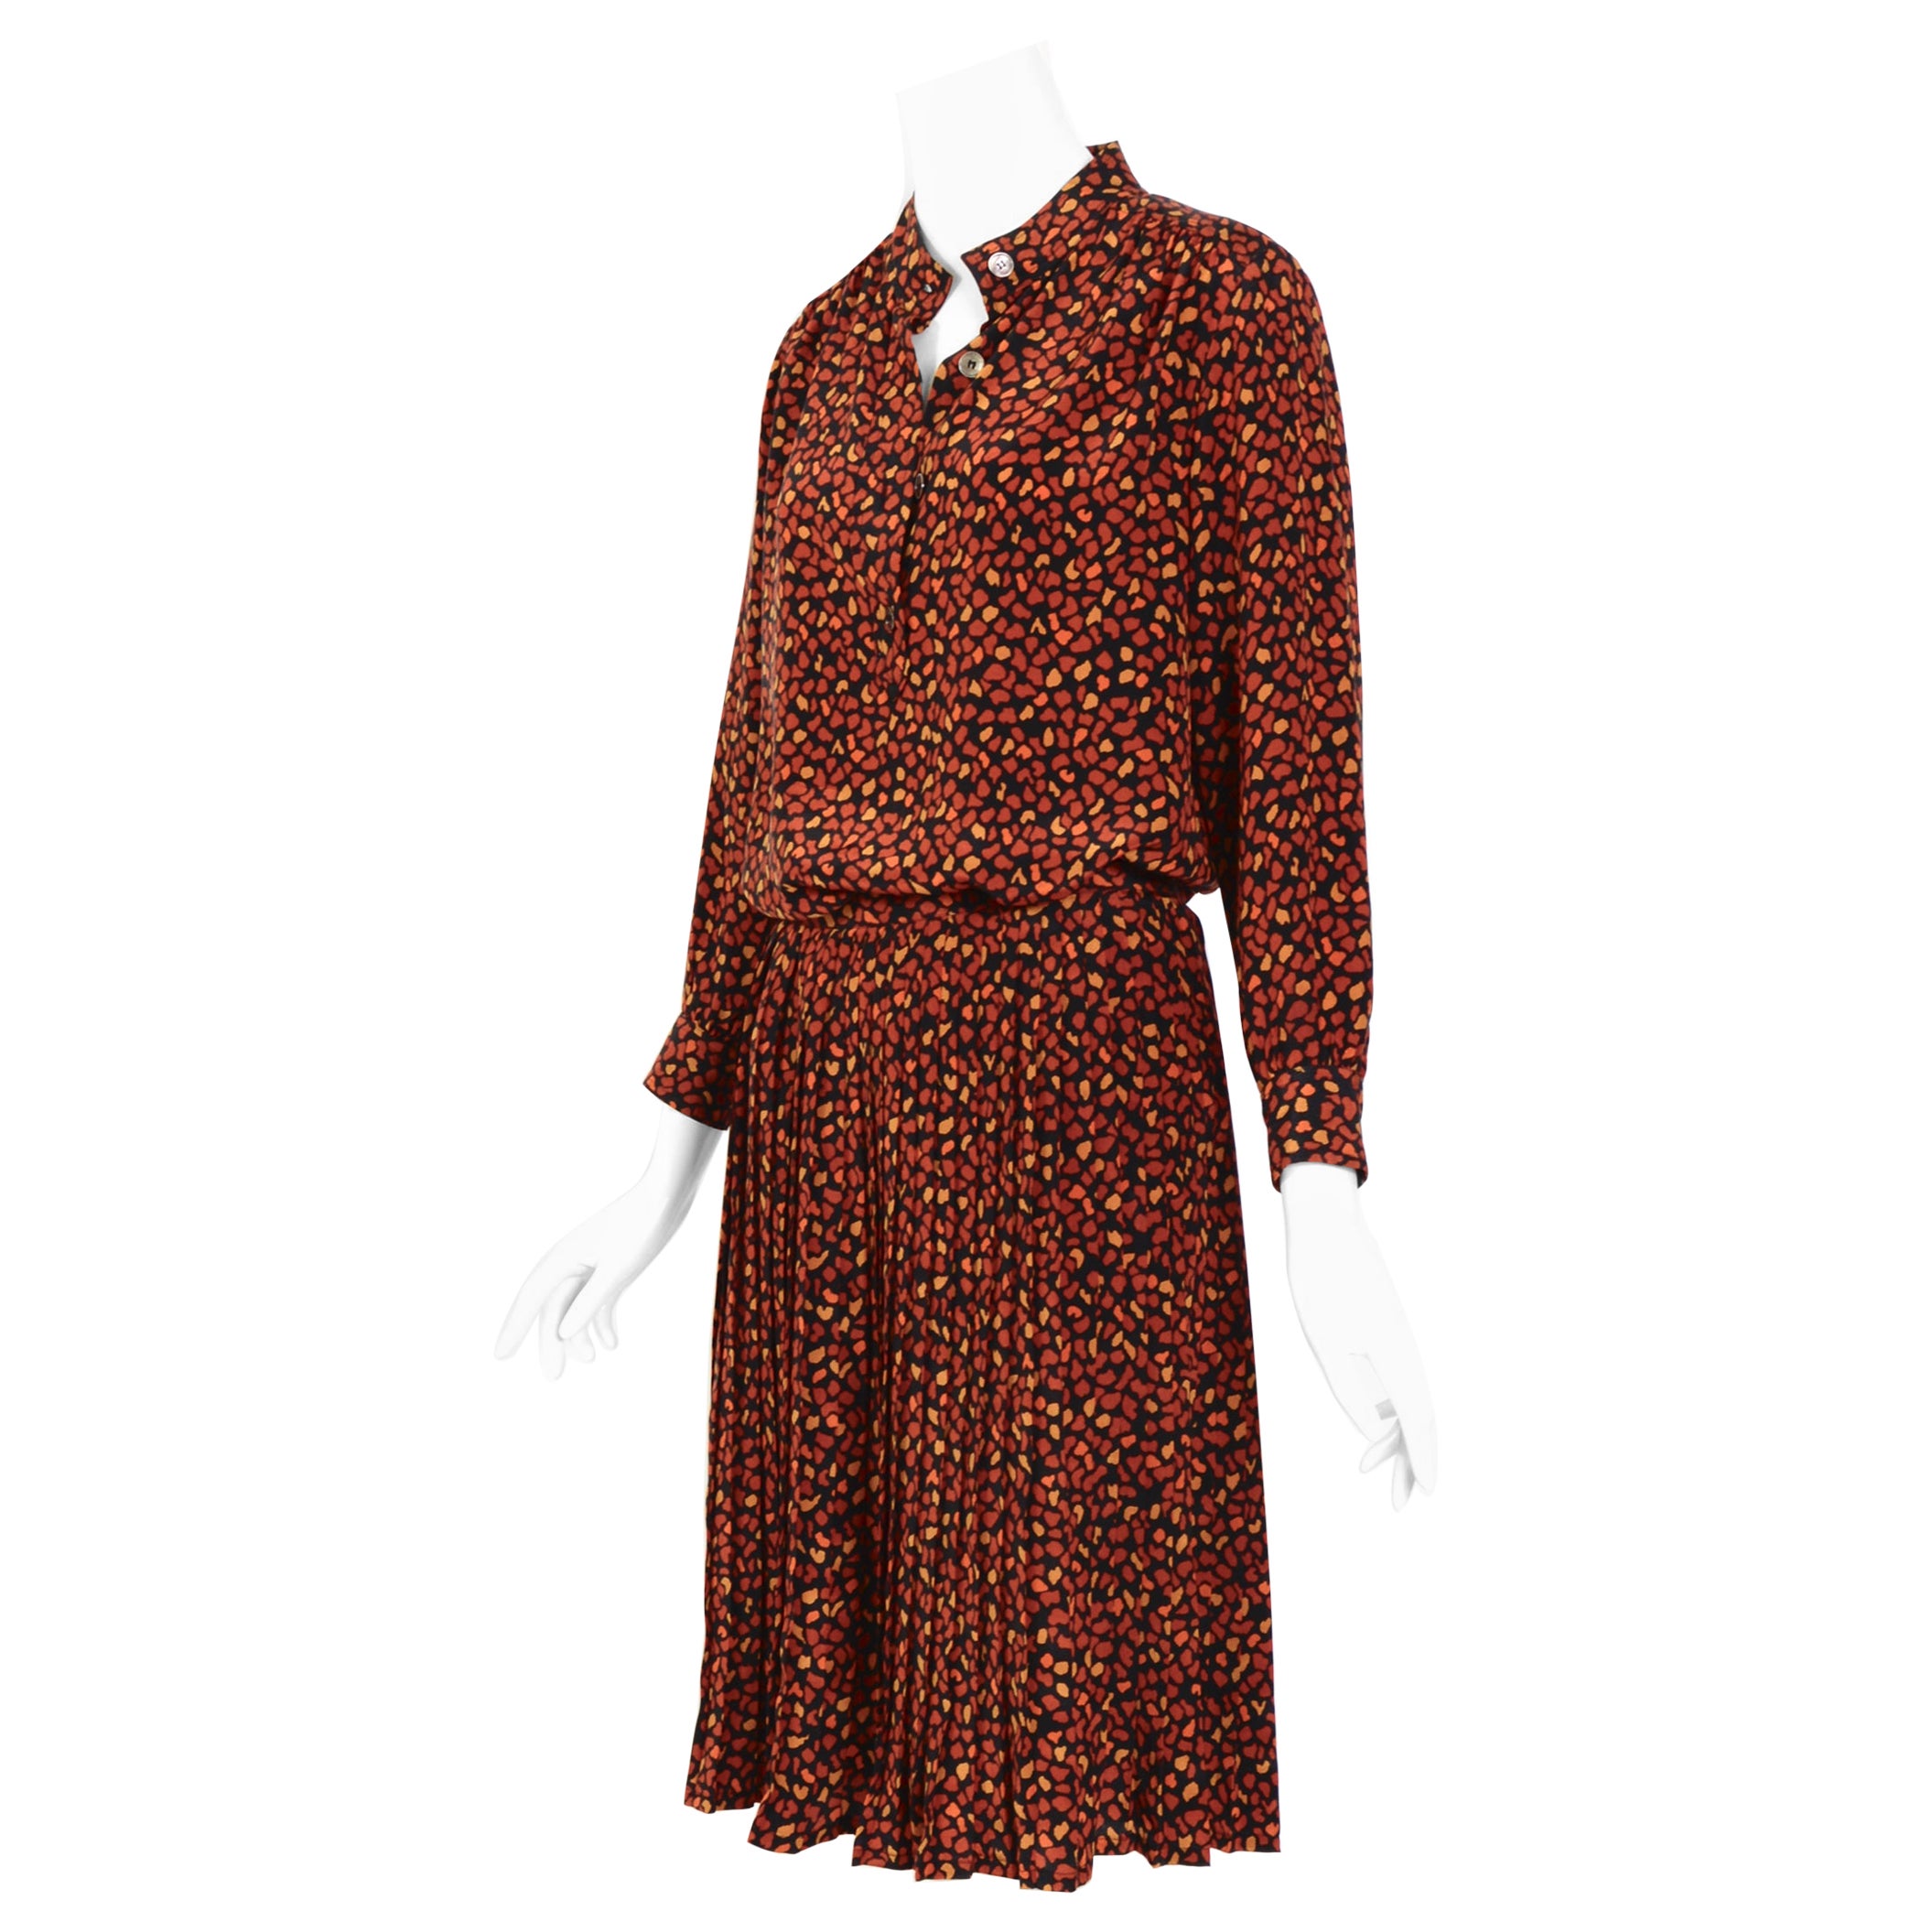 Vintage Celine Fashion: Bags, Dresses & More - 1,144 For Sale at 